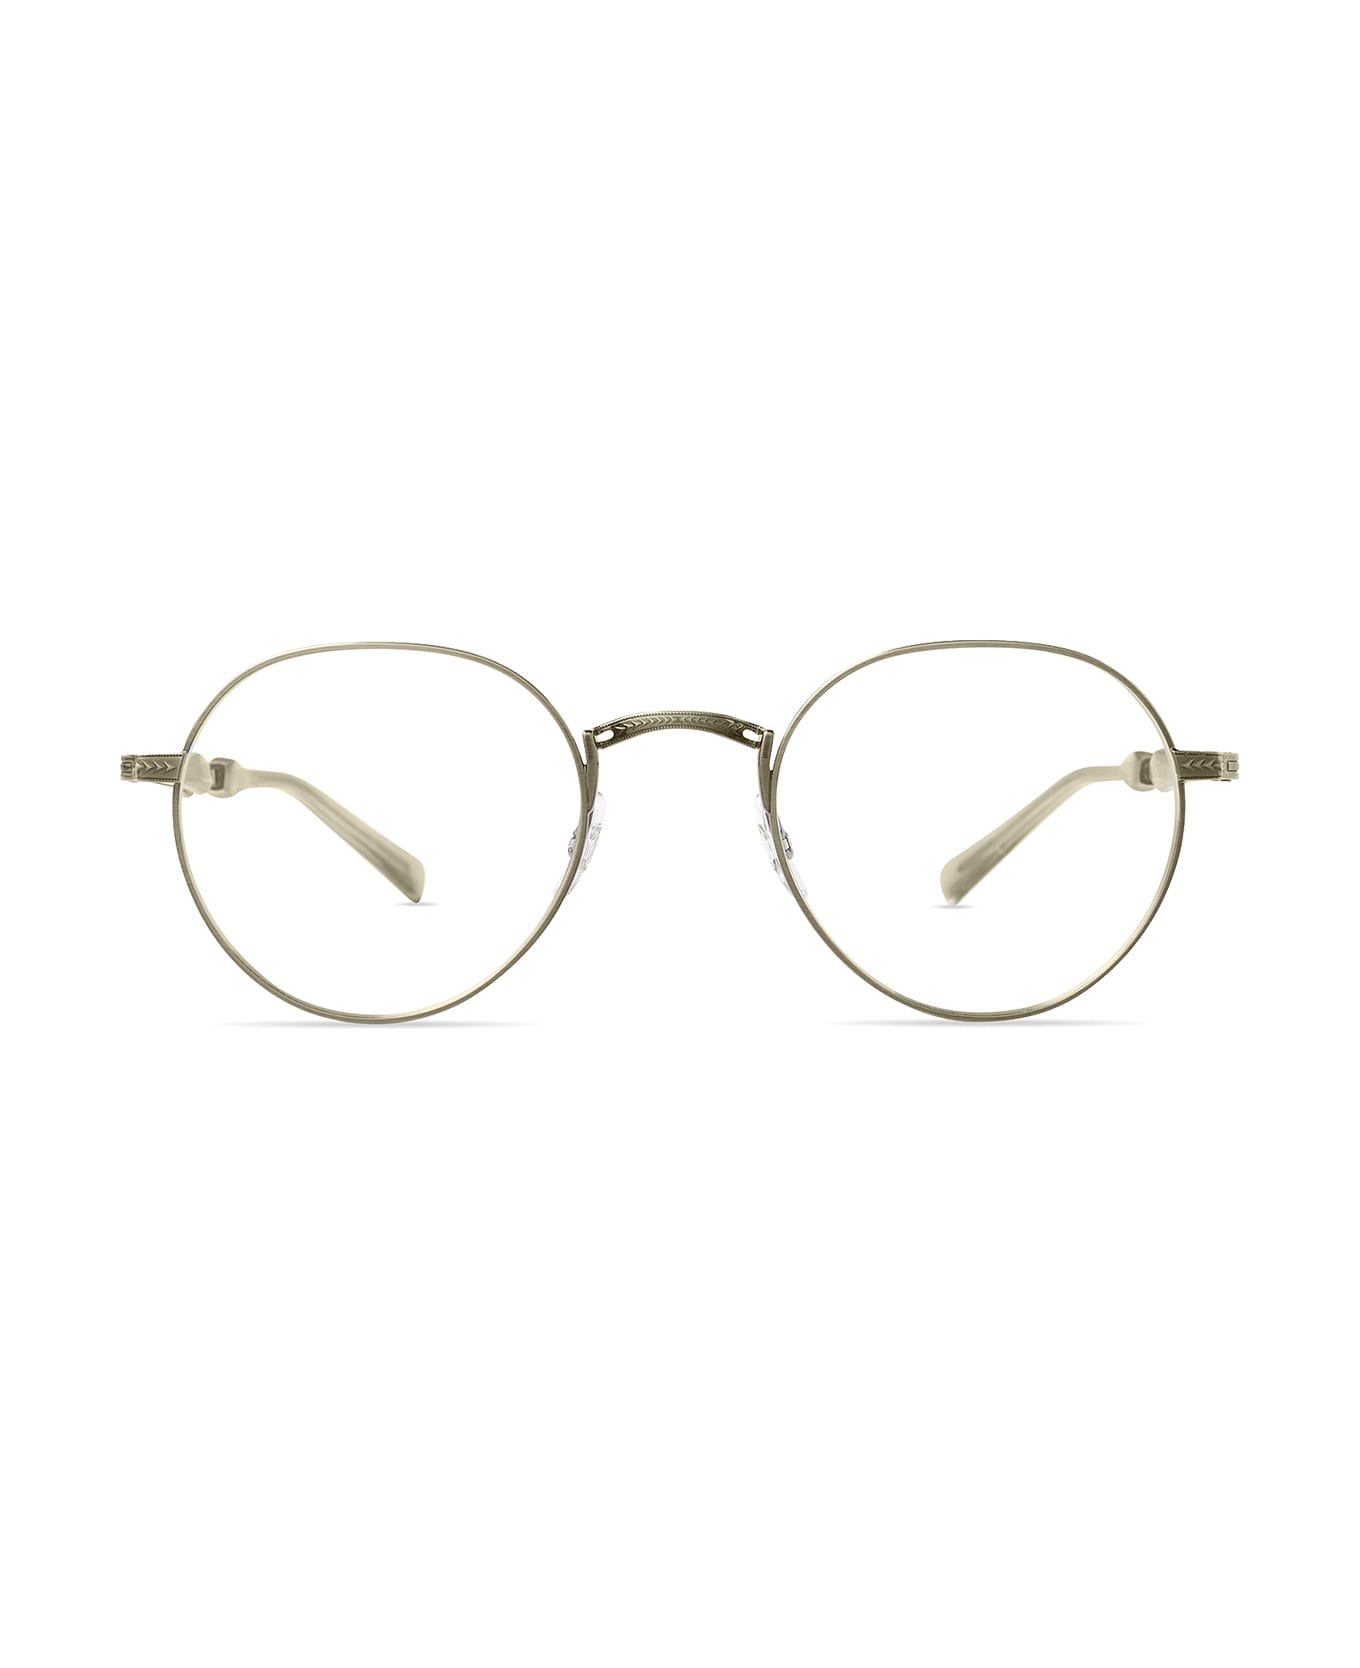 Mr. Leight Hachi Ii C Pewter-vera Glasses - Pewter-Vera